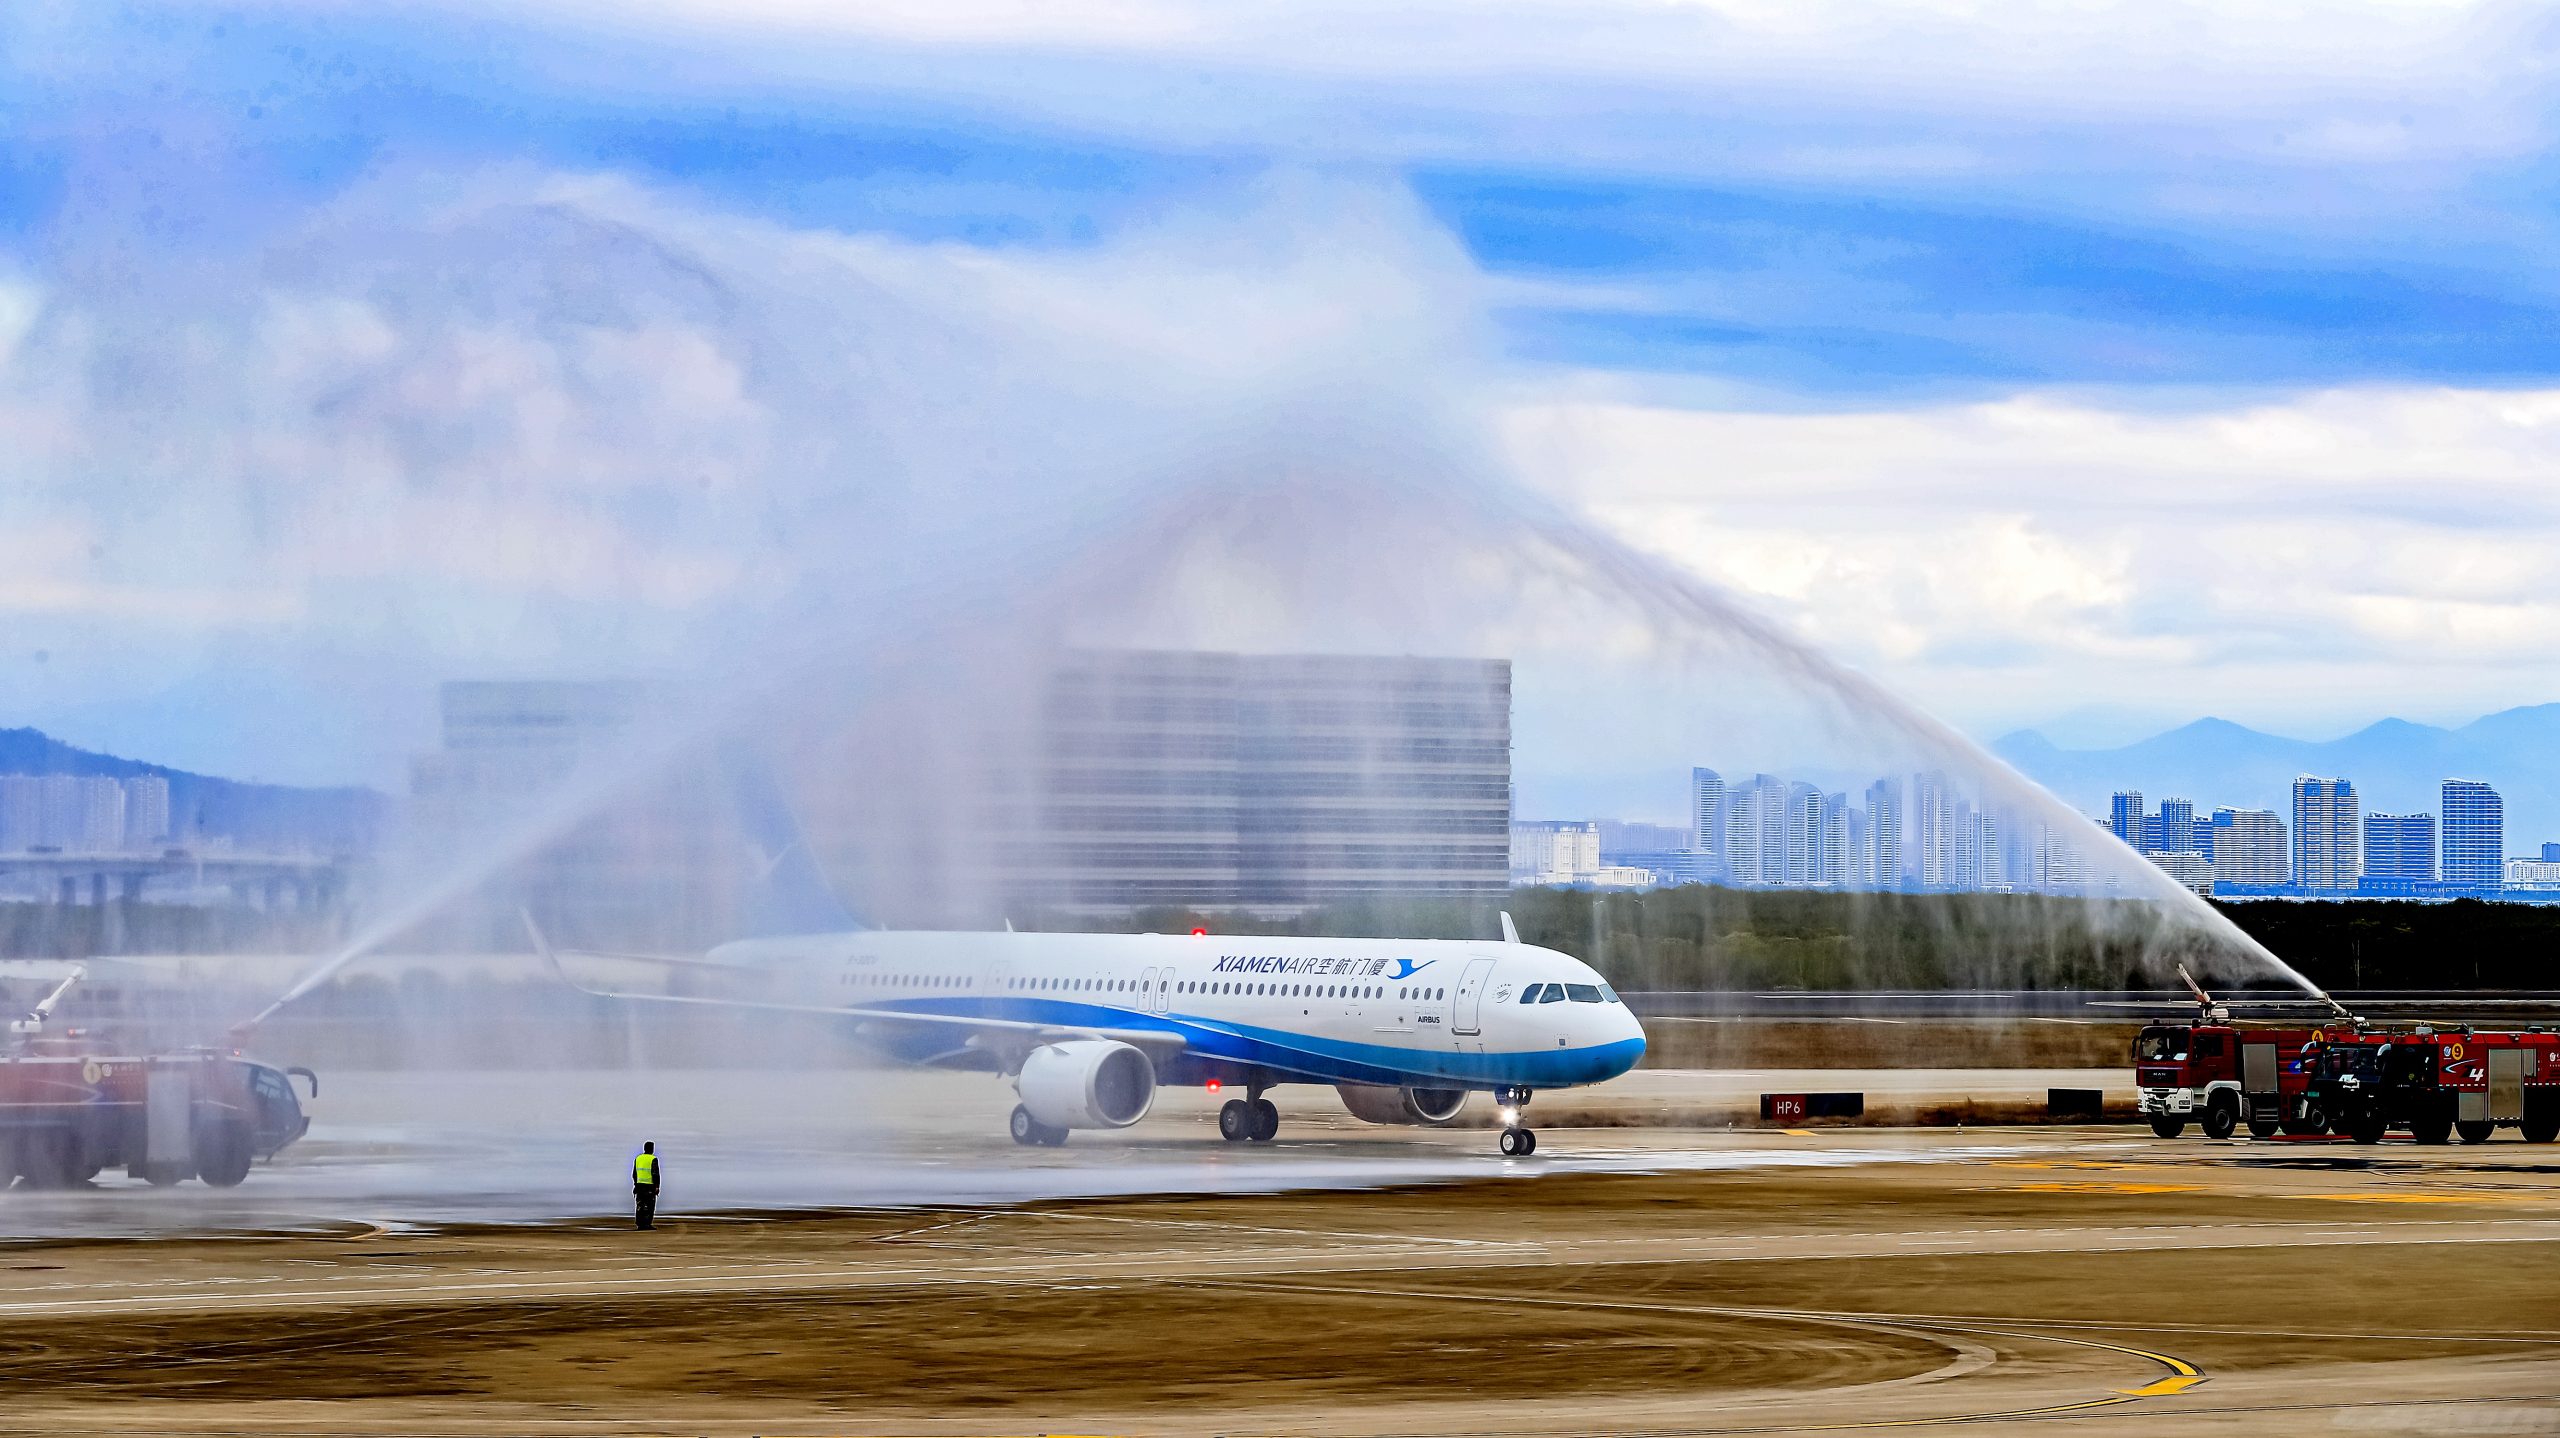 廈門航空接收其首架空客A321neo飛機 成為空客新運營商